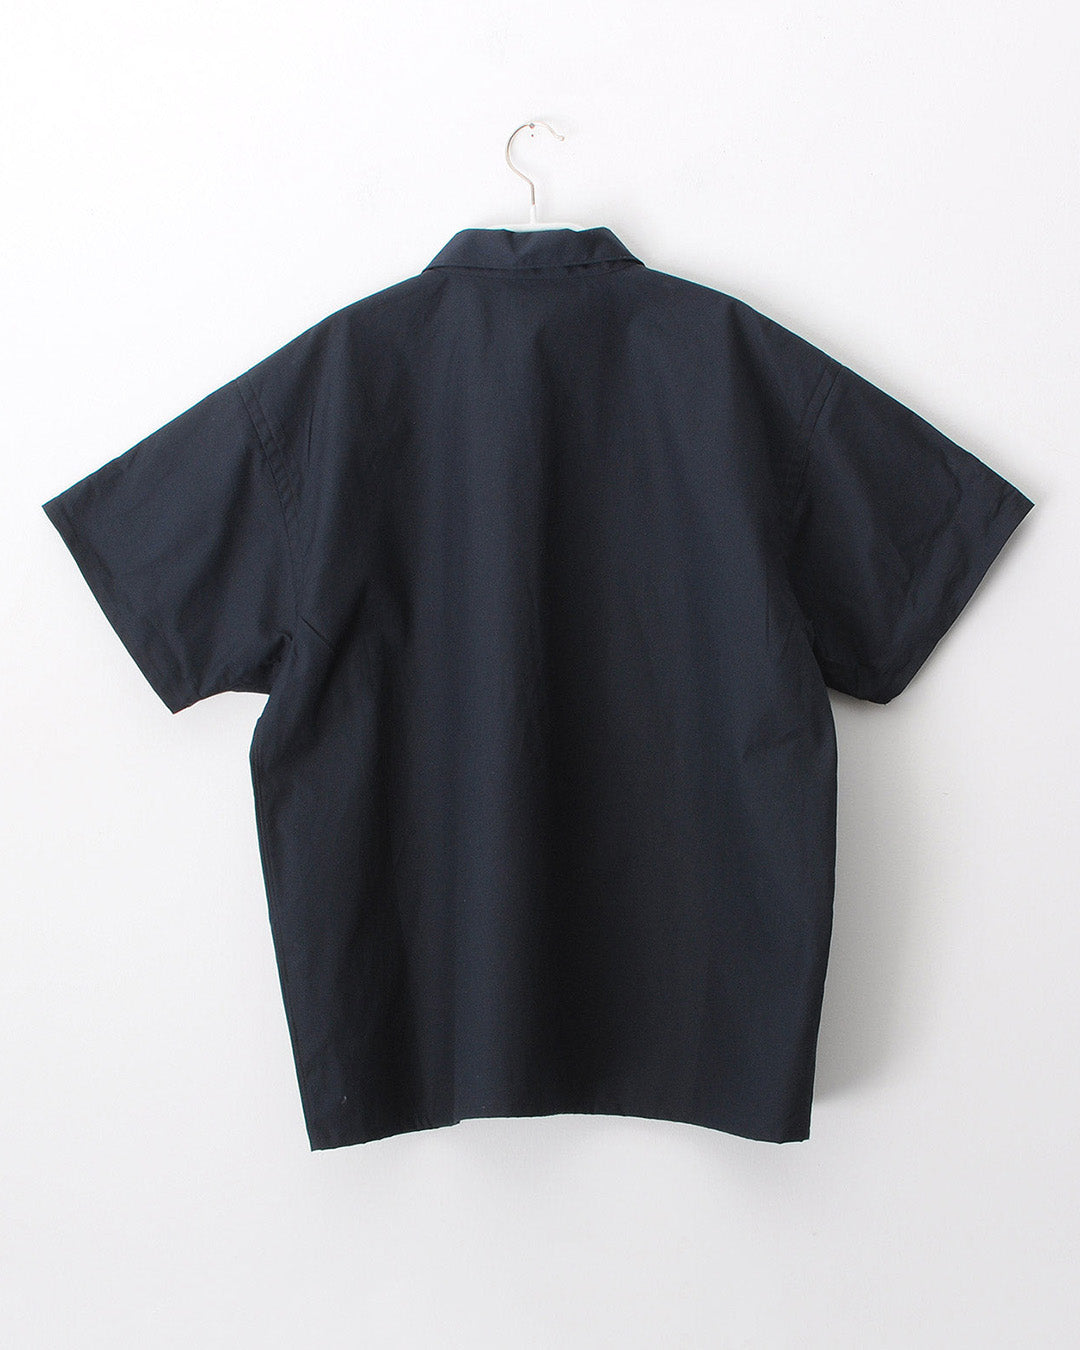 TUKI blouses / oxford / 4色